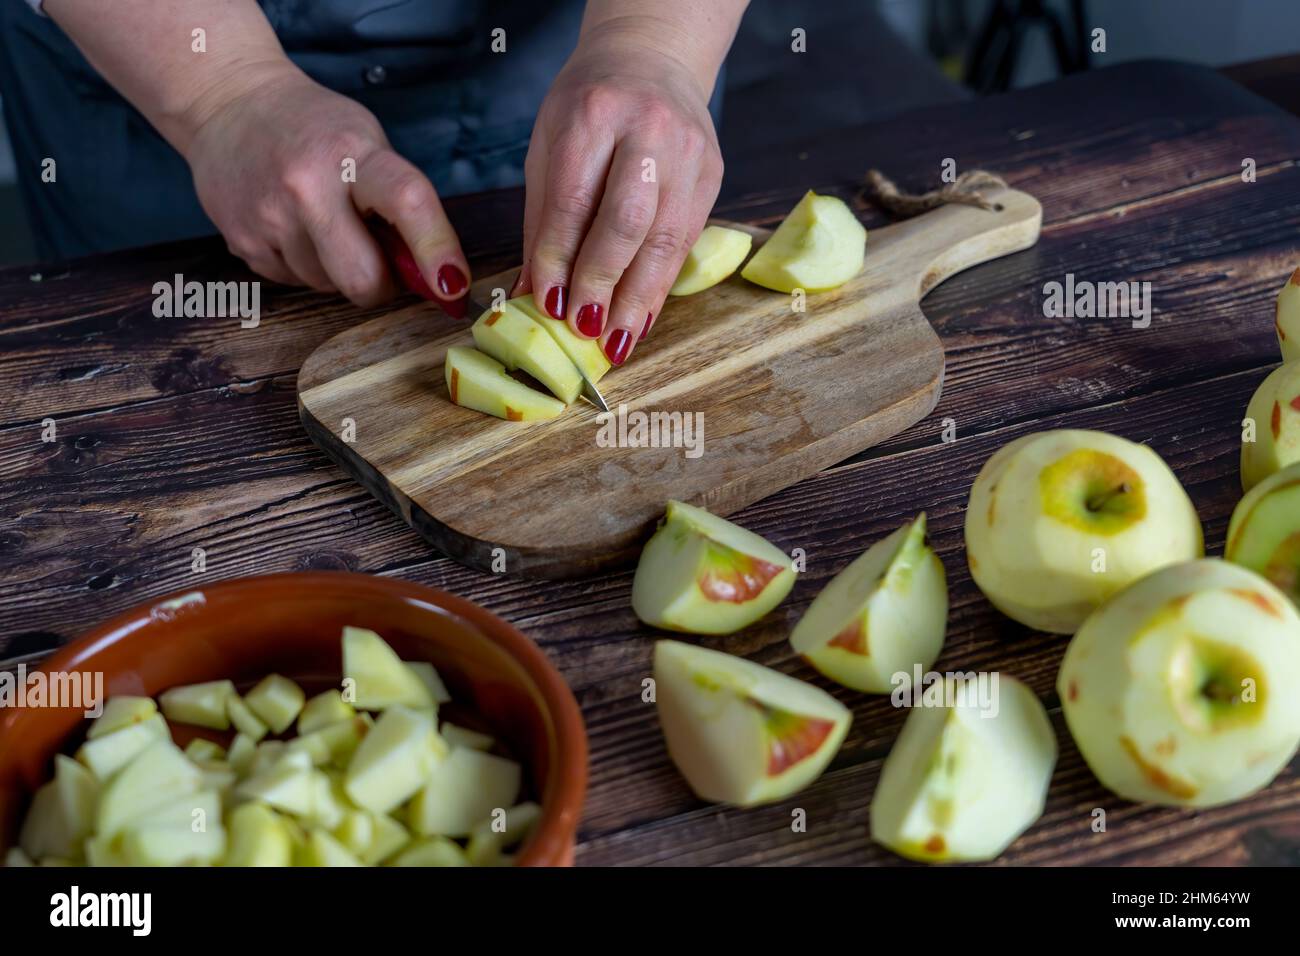 Les femmes préparant une tarte aux pommes ou une grande tarte sur fond de table en bois. Couper des pommes ou trancher Banque D'Images